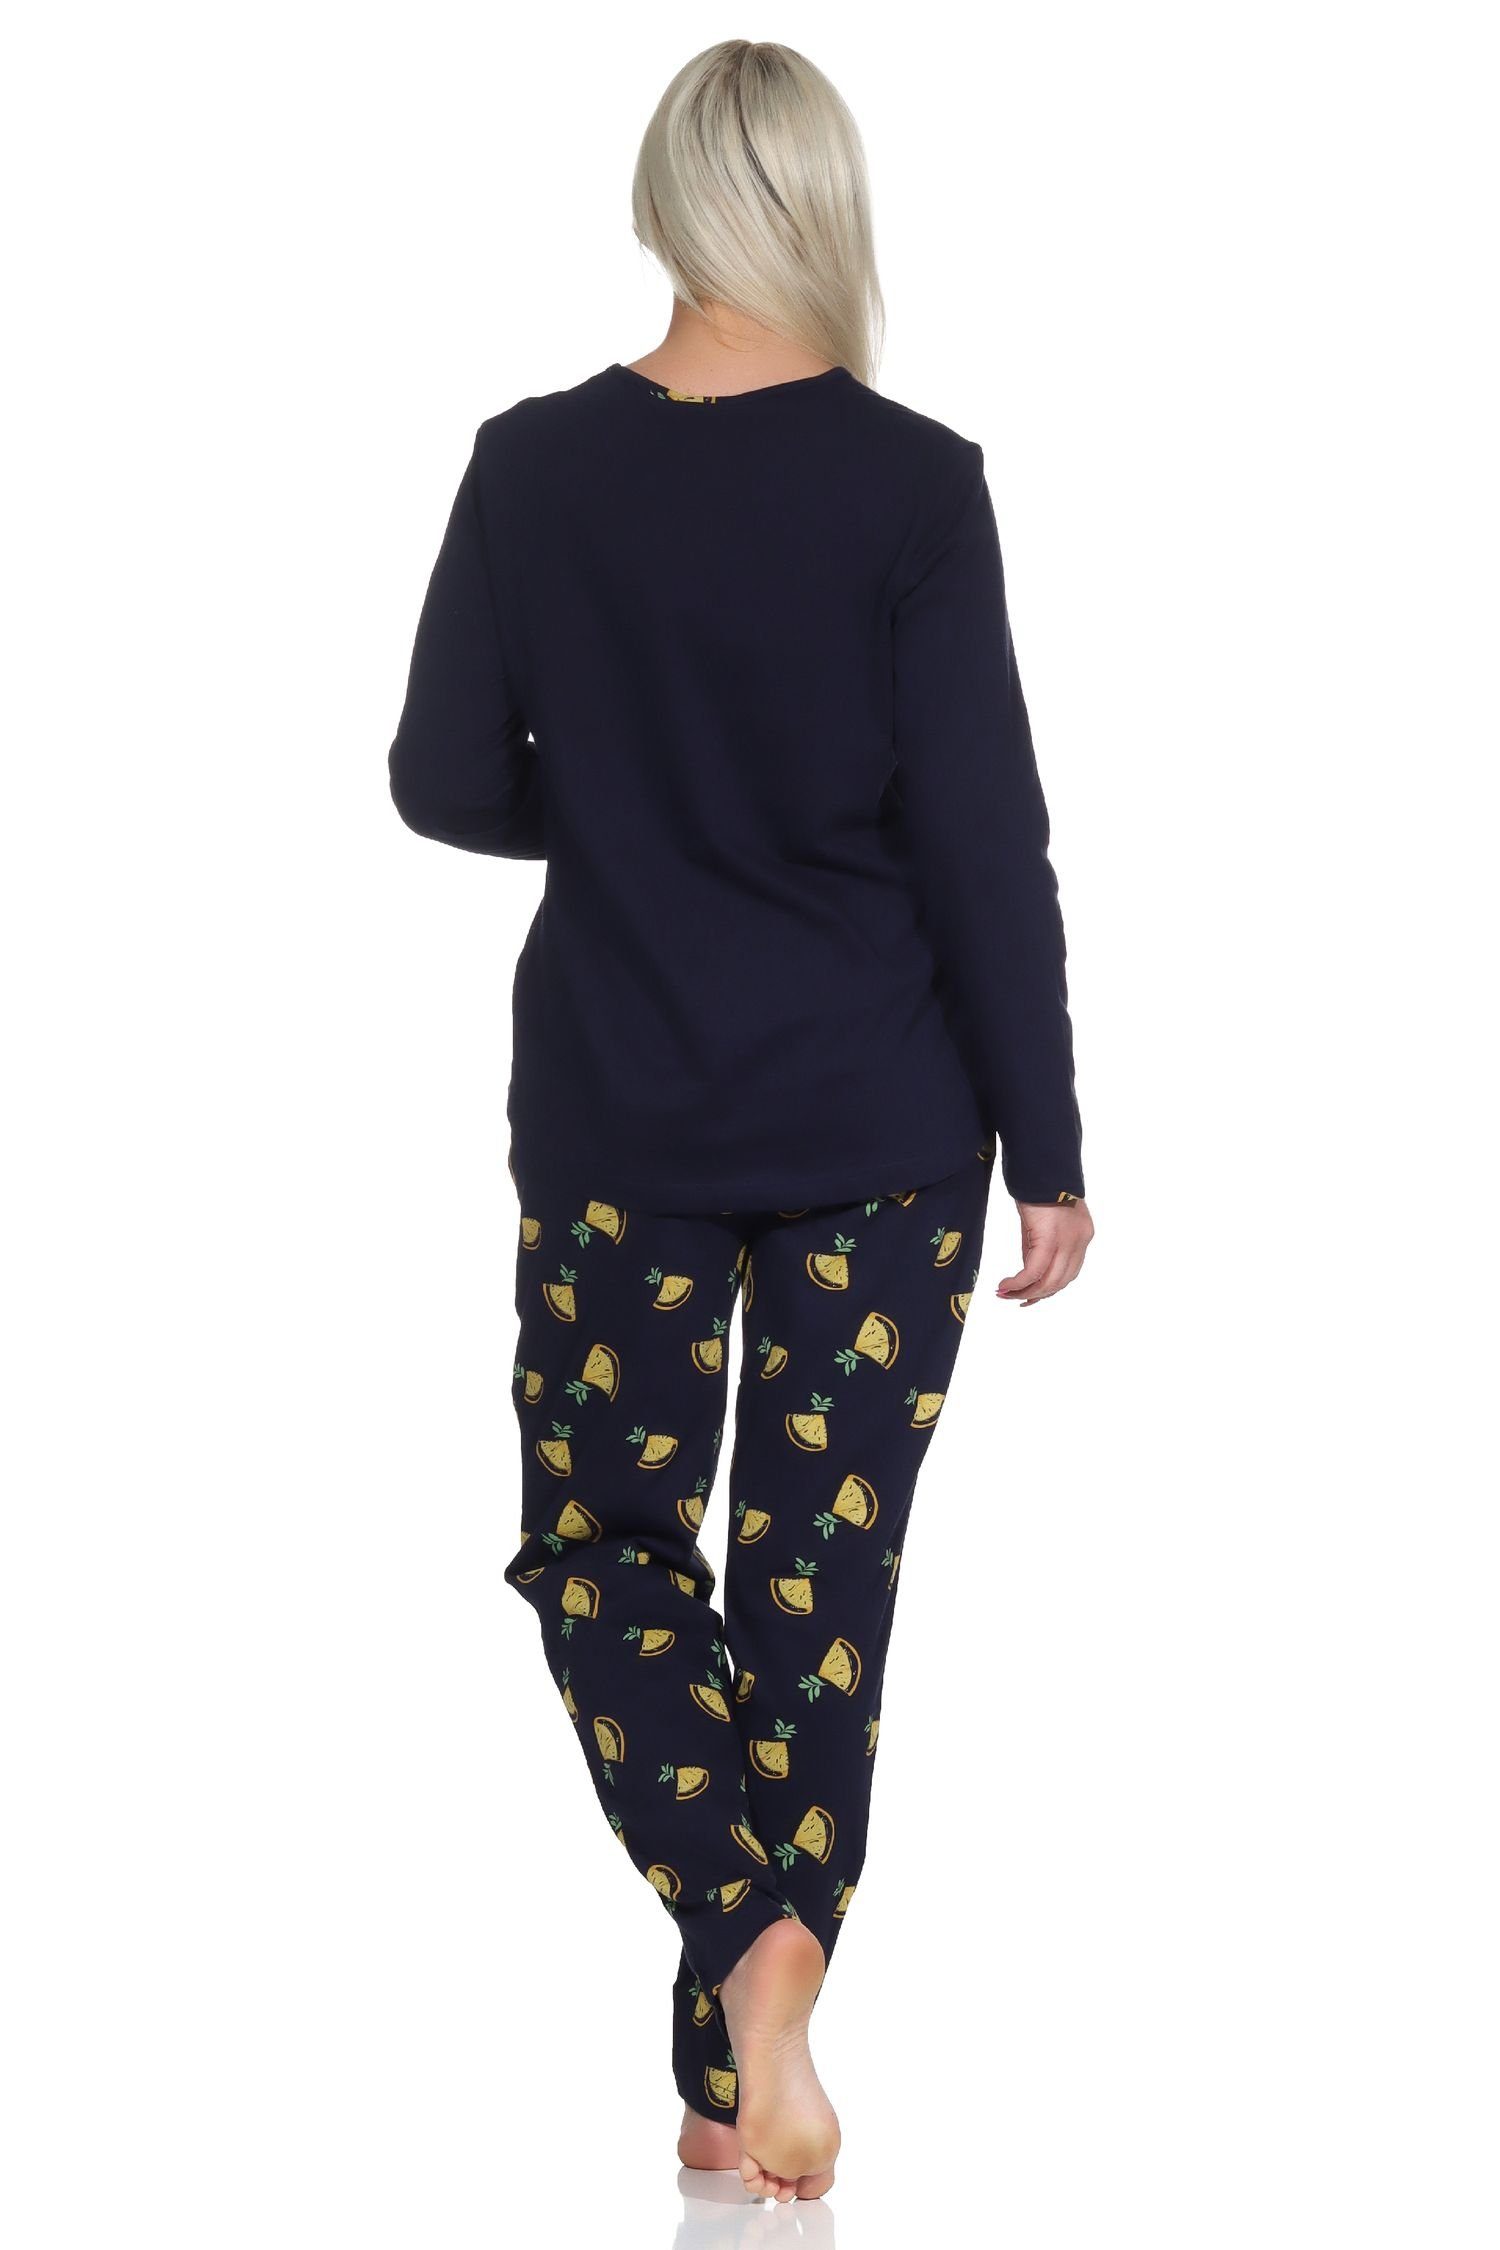 Wäsche/Bademode Pyjamas Normann Pyjama Süsser Damen Schlafanzug langarm Pyjama mit Zitronen als Motiv - 112 201 90 535